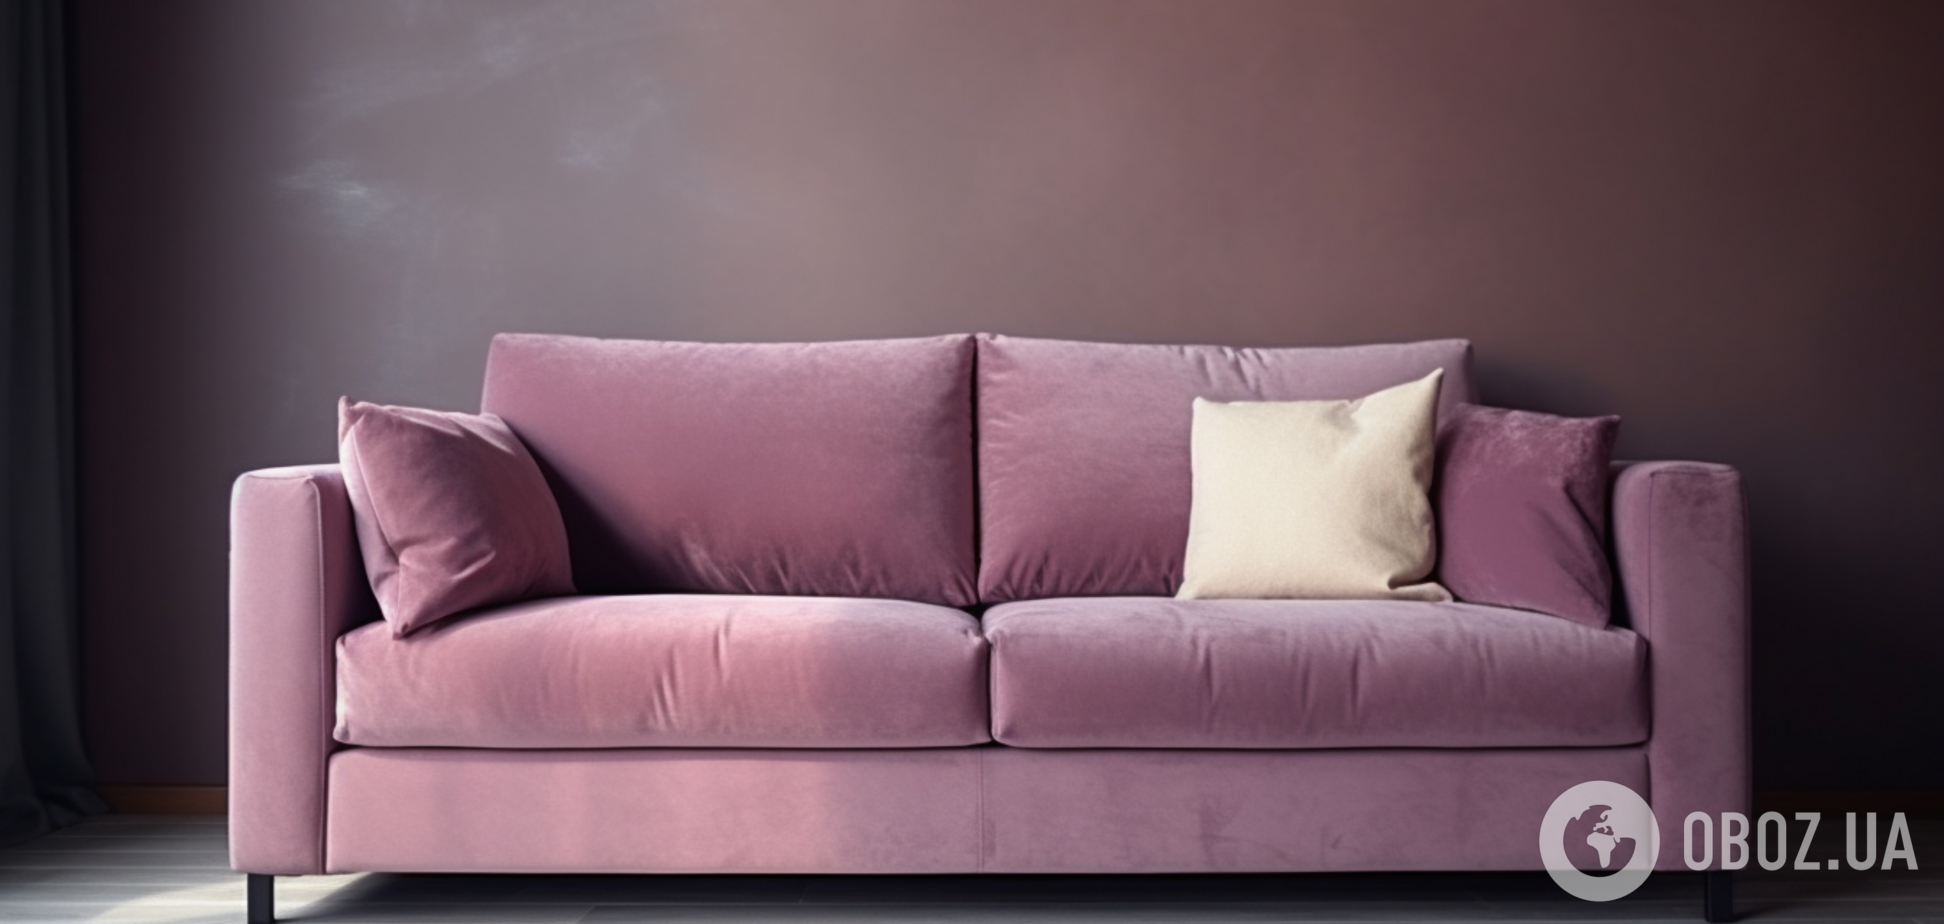 Как почистить обивку дивана: методы для очень грязной мебели